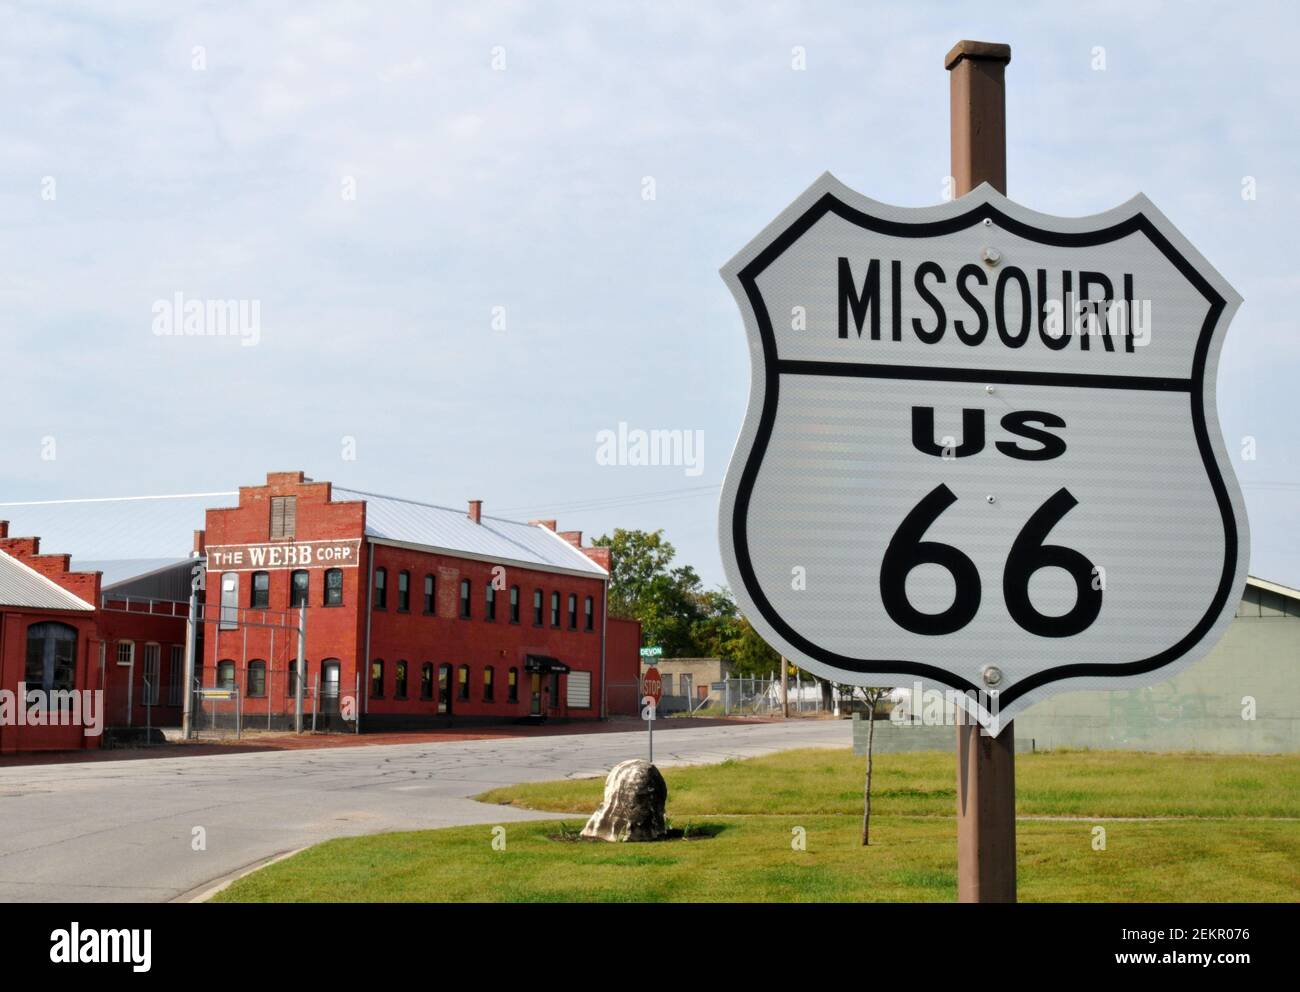 Ein US 66 Straßenschild markiert Route 66 durch Webb City, Missouri. Der INDUSTRIEKOMPLEX DER WEBB Corporation (Hintergrund) steht seit 1881 auf dem Gelände. Stockfoto